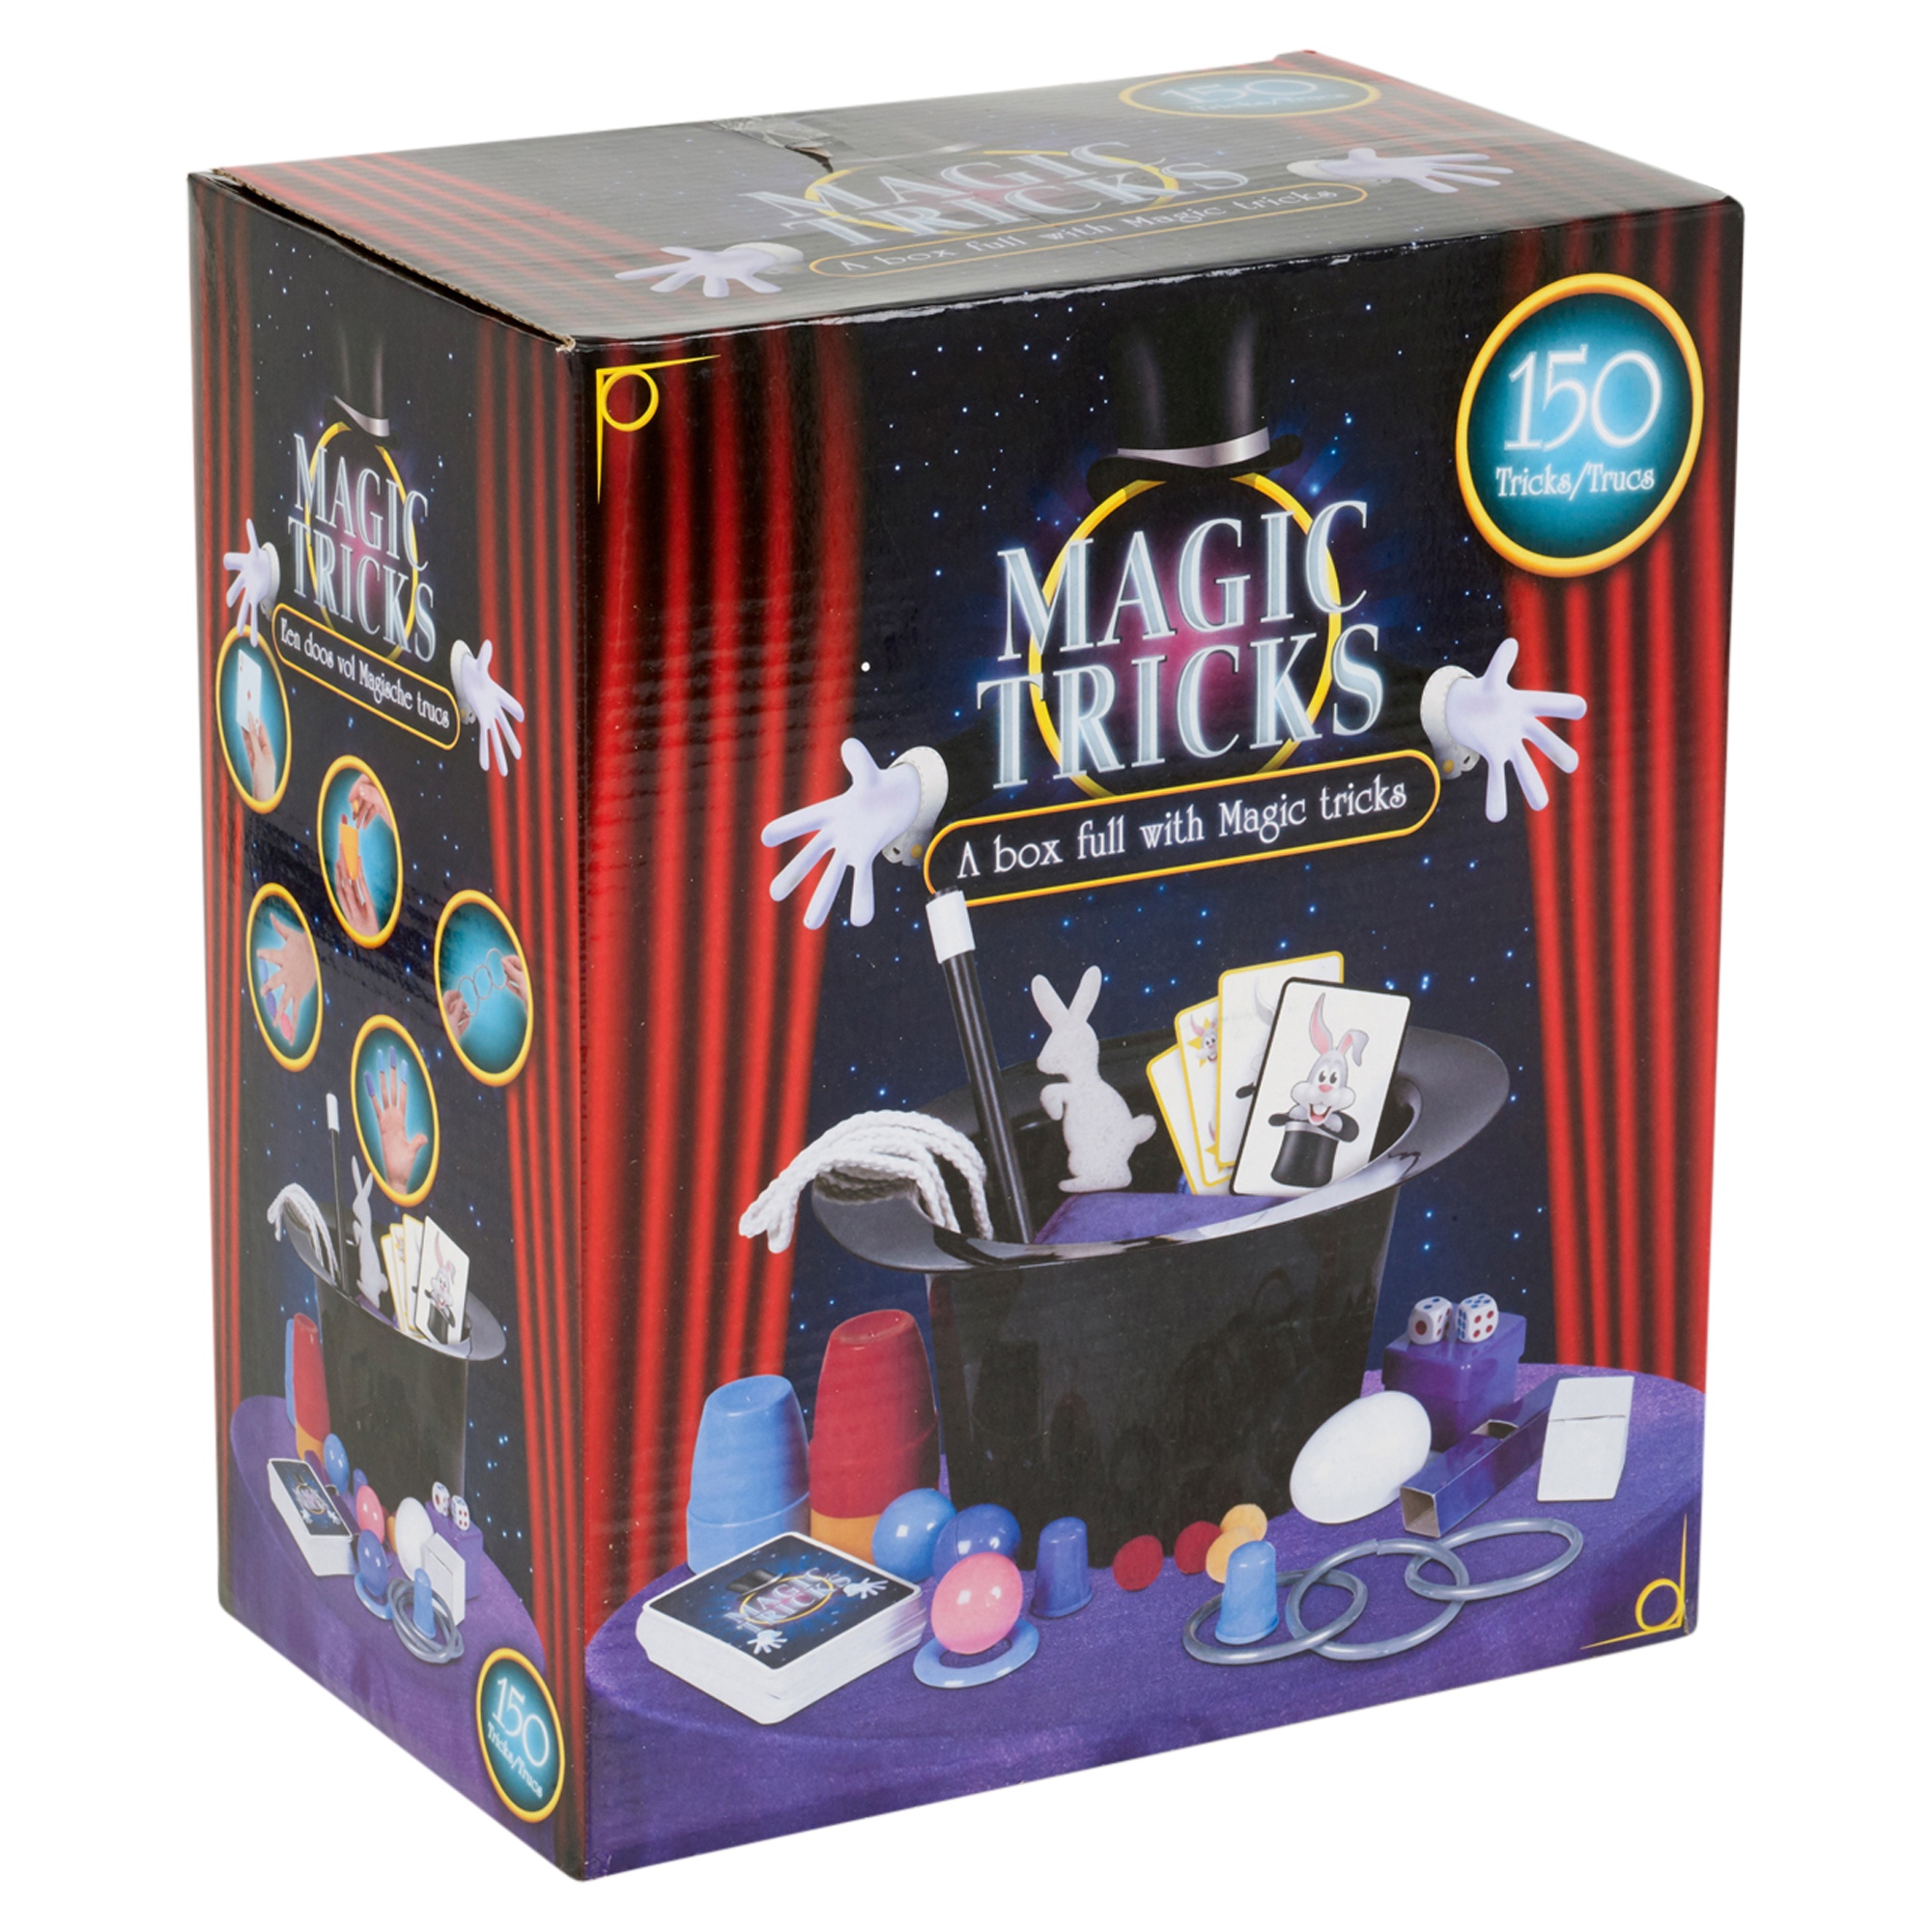 Ящик фокусника. Magic Tricks 150 a Box Full with Magic Tricks. Набор Magic Kids. Magic Box фокусы.